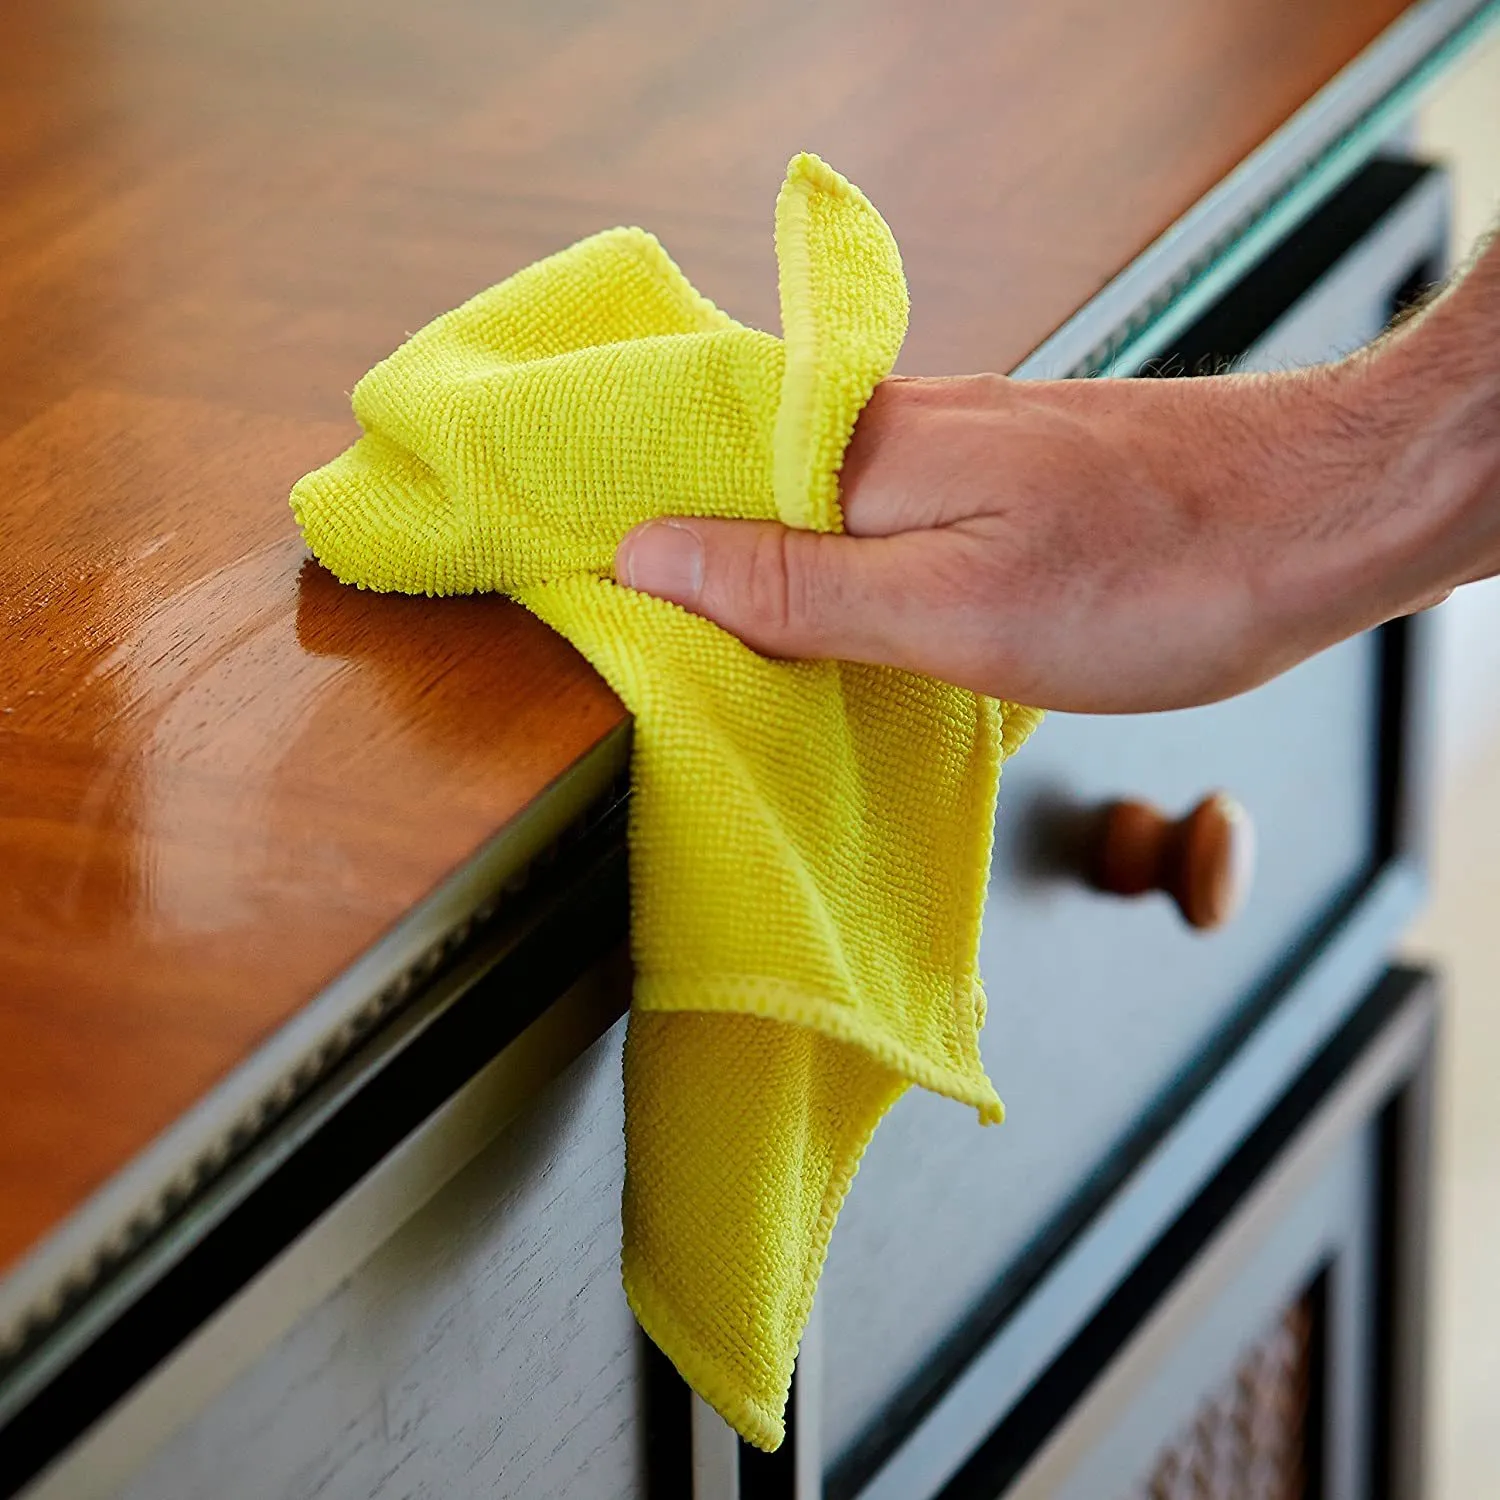 5 panni pulizia in microfibra, asciugamani riutilizzabili senza pelucchi la casa, la cucina e l'auto, strofinacci da cucina assortiti